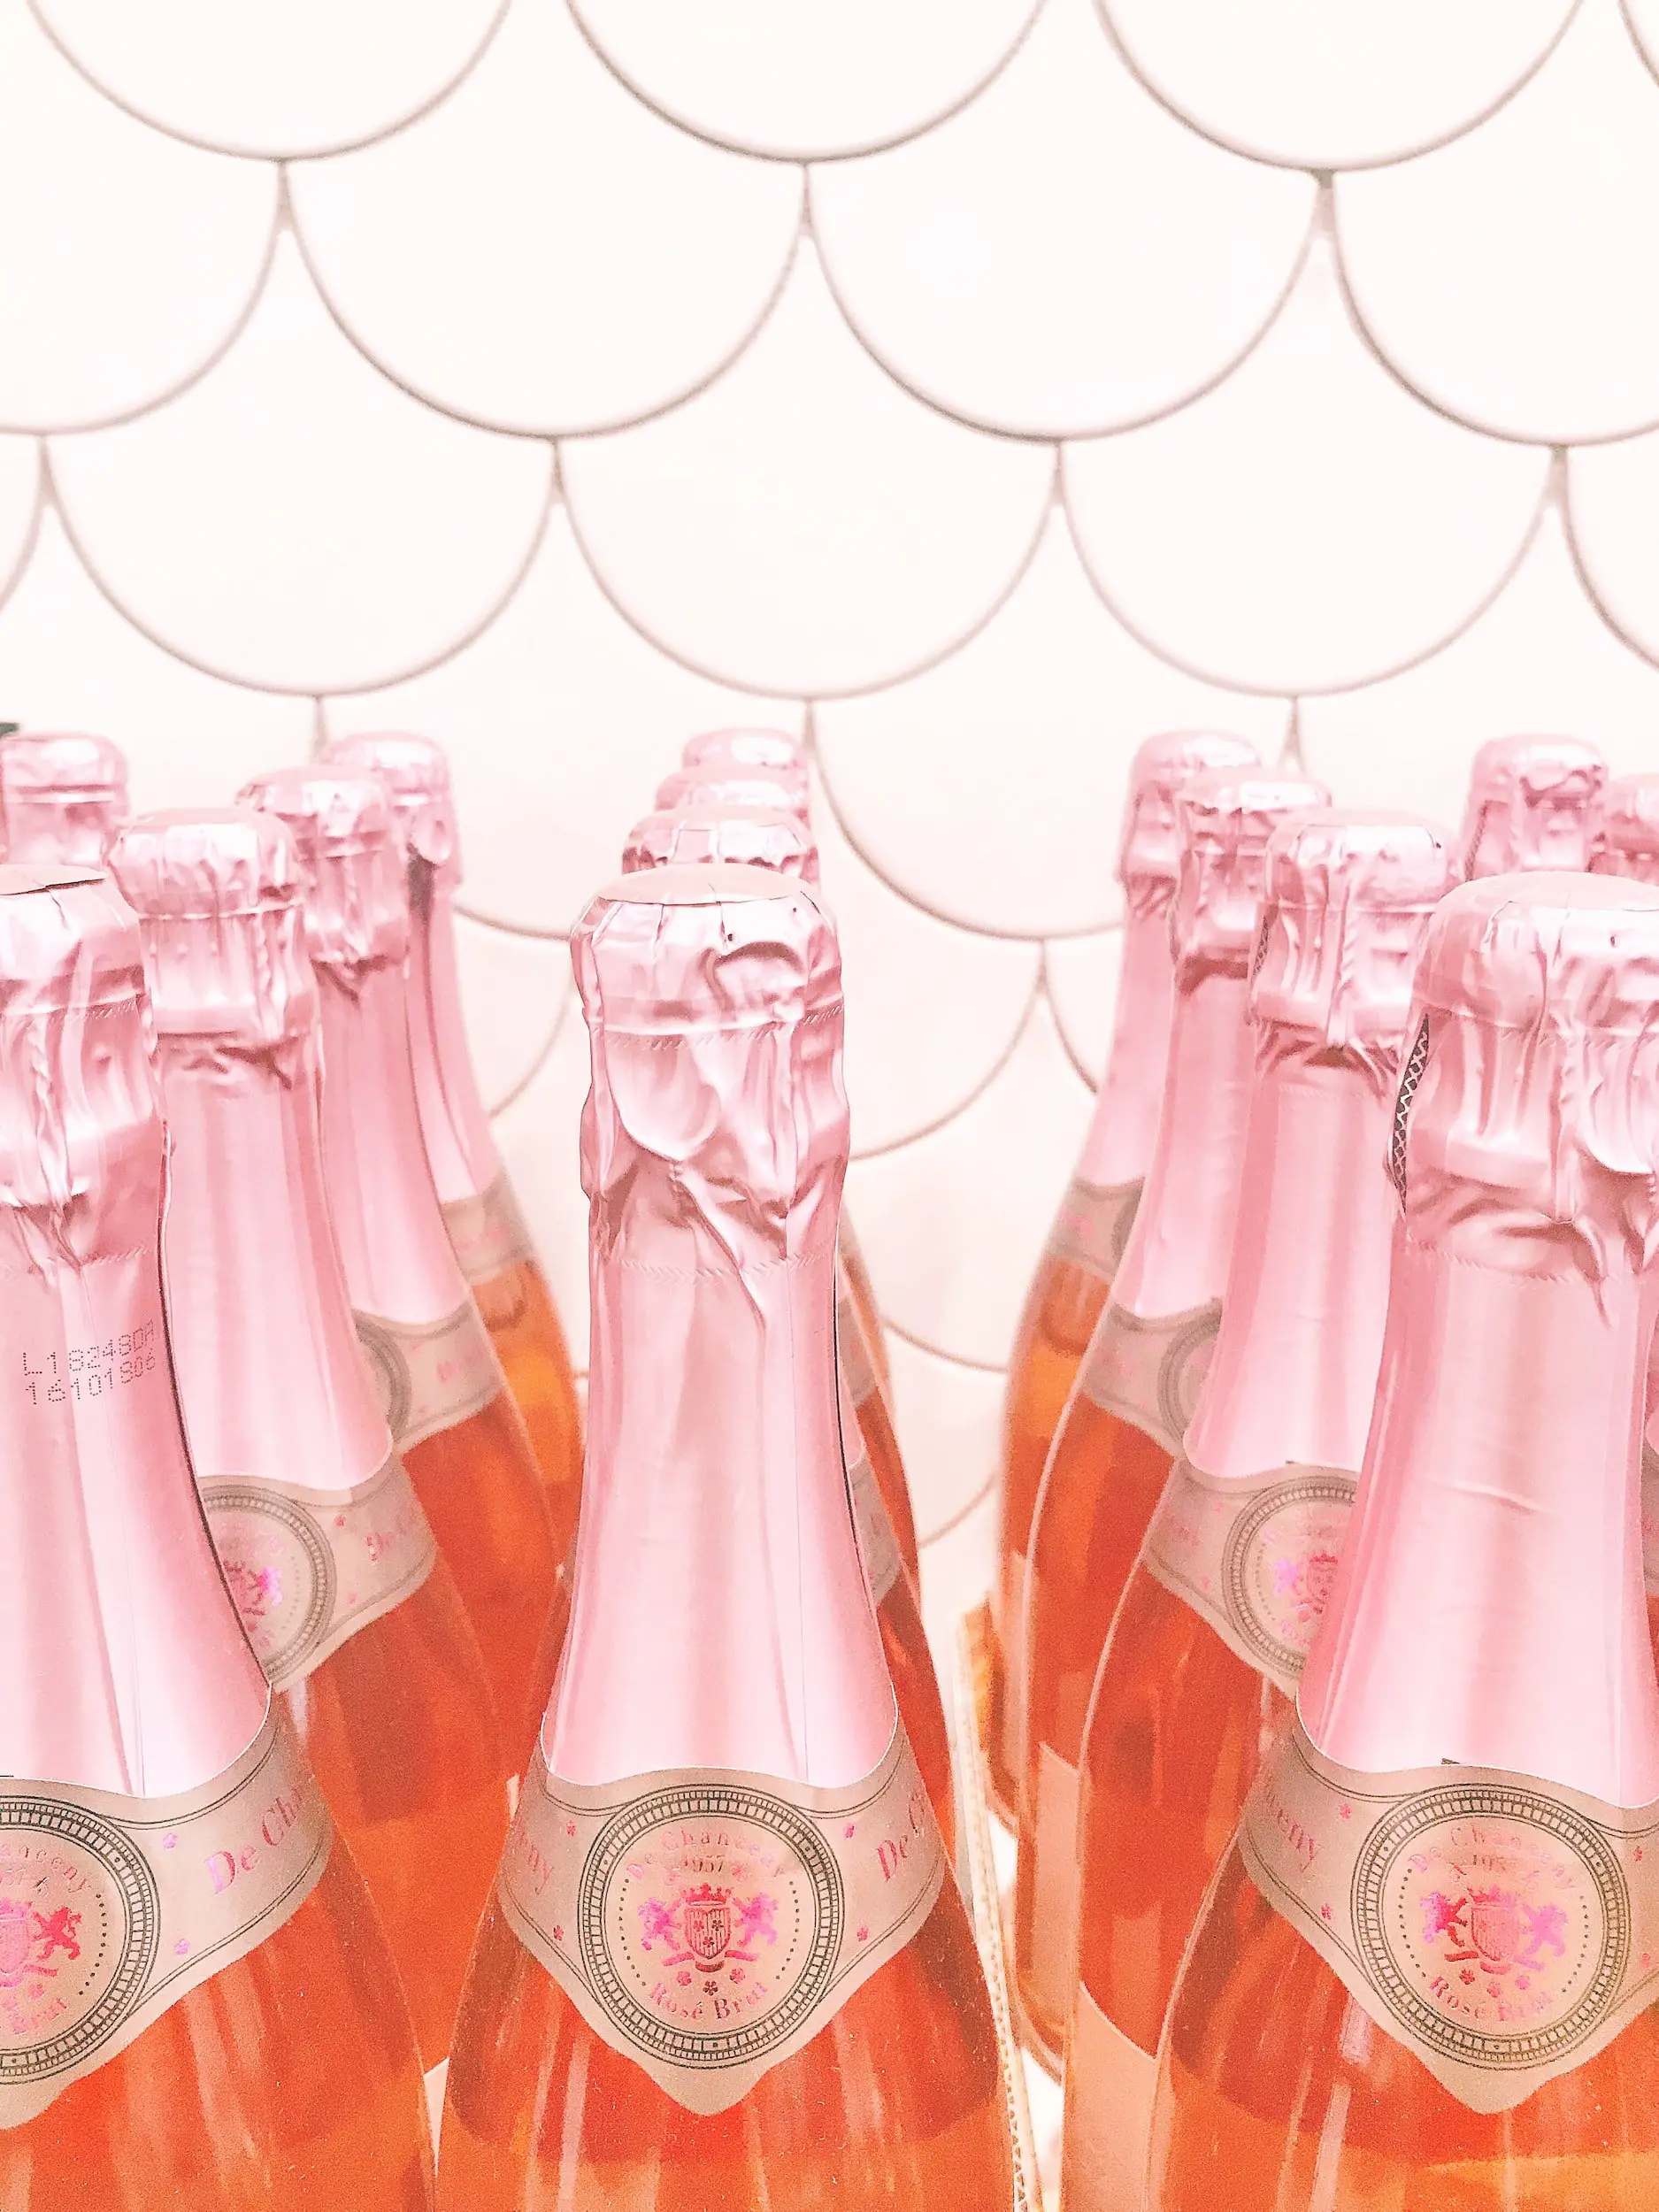 sparkling rose bottles - sparkling rose wine